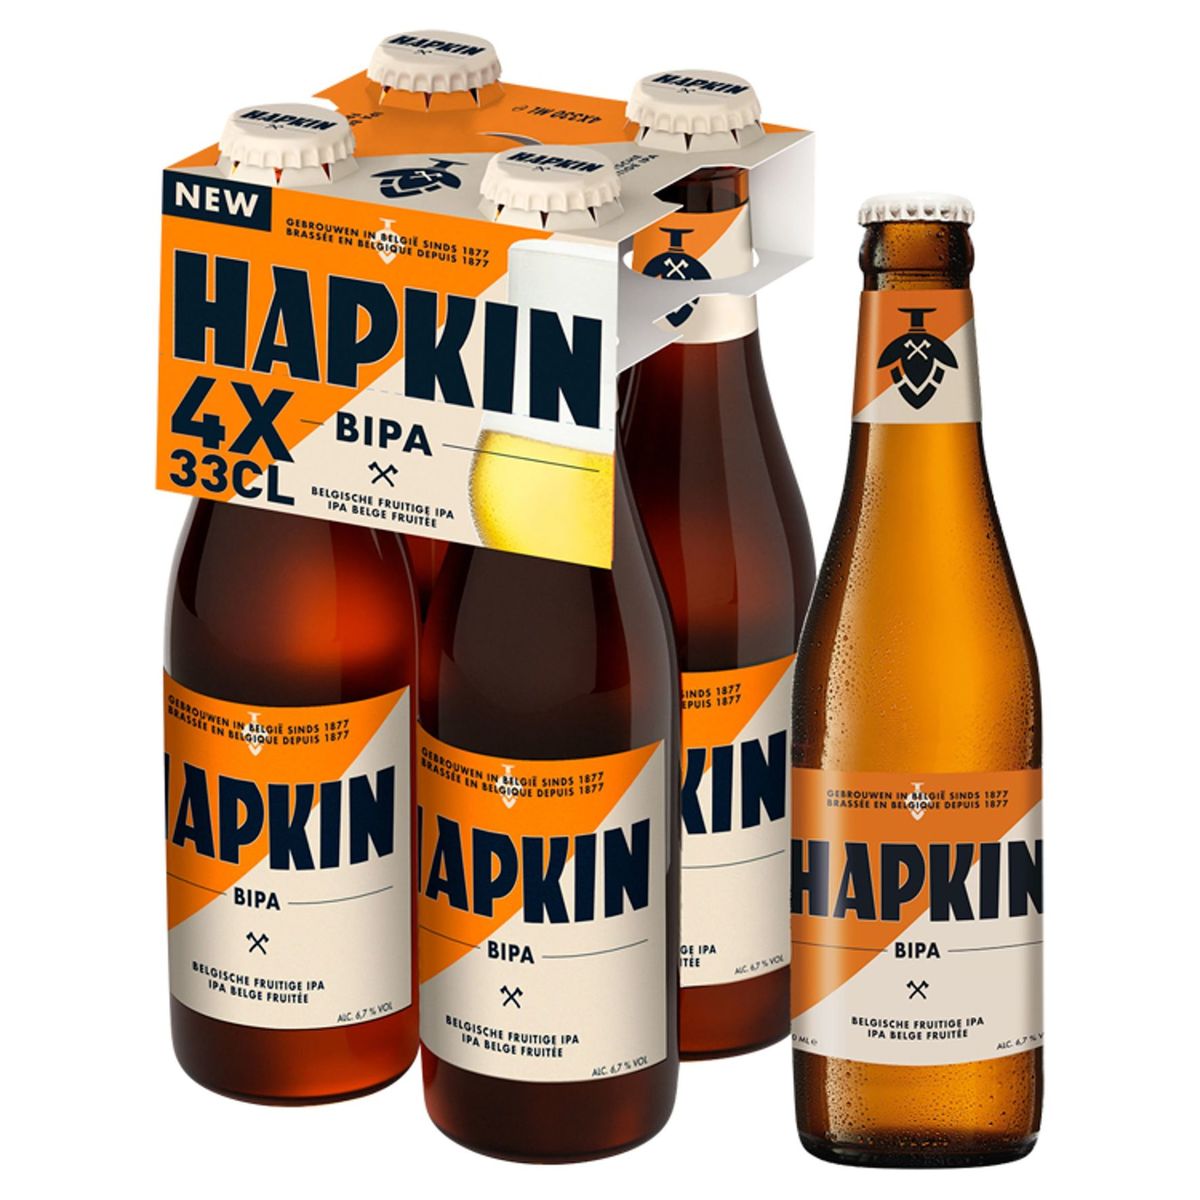 Hapkin Bipa Belgische fruitige IPA 4x330ml